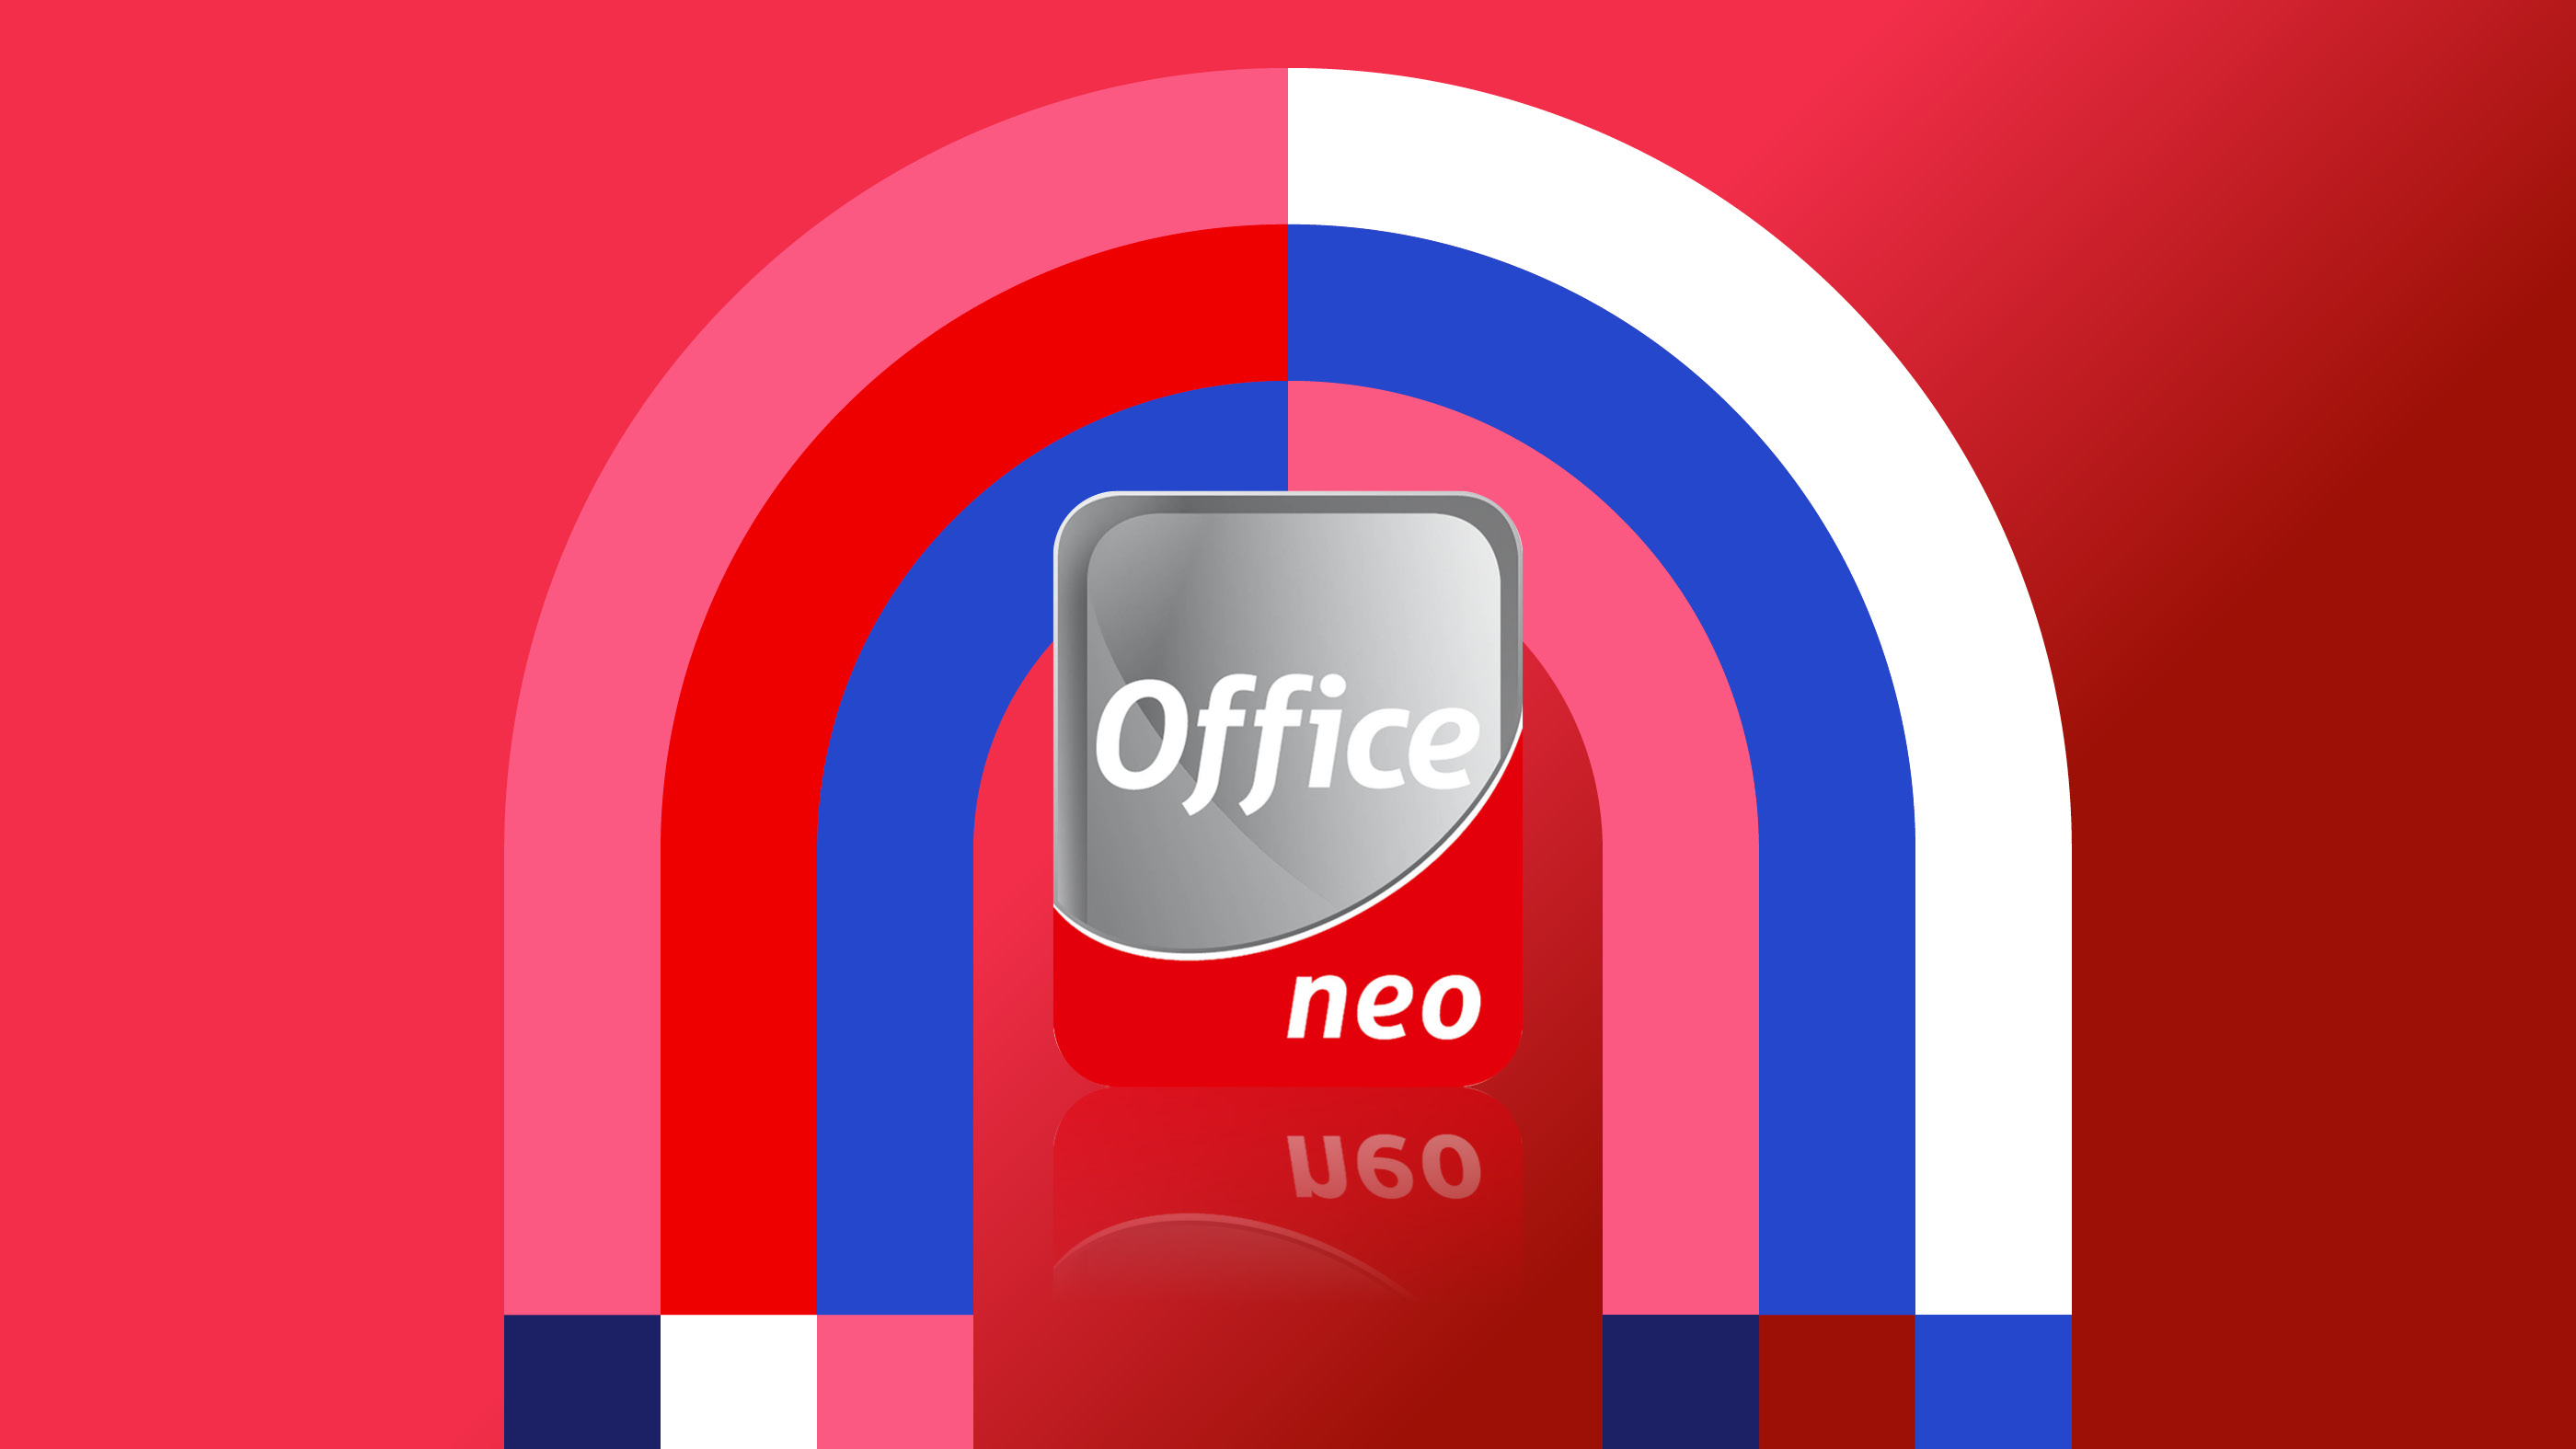 Ziel erreicht: Erfolgreicher Abschluss des Office_neo-Serienrollouts